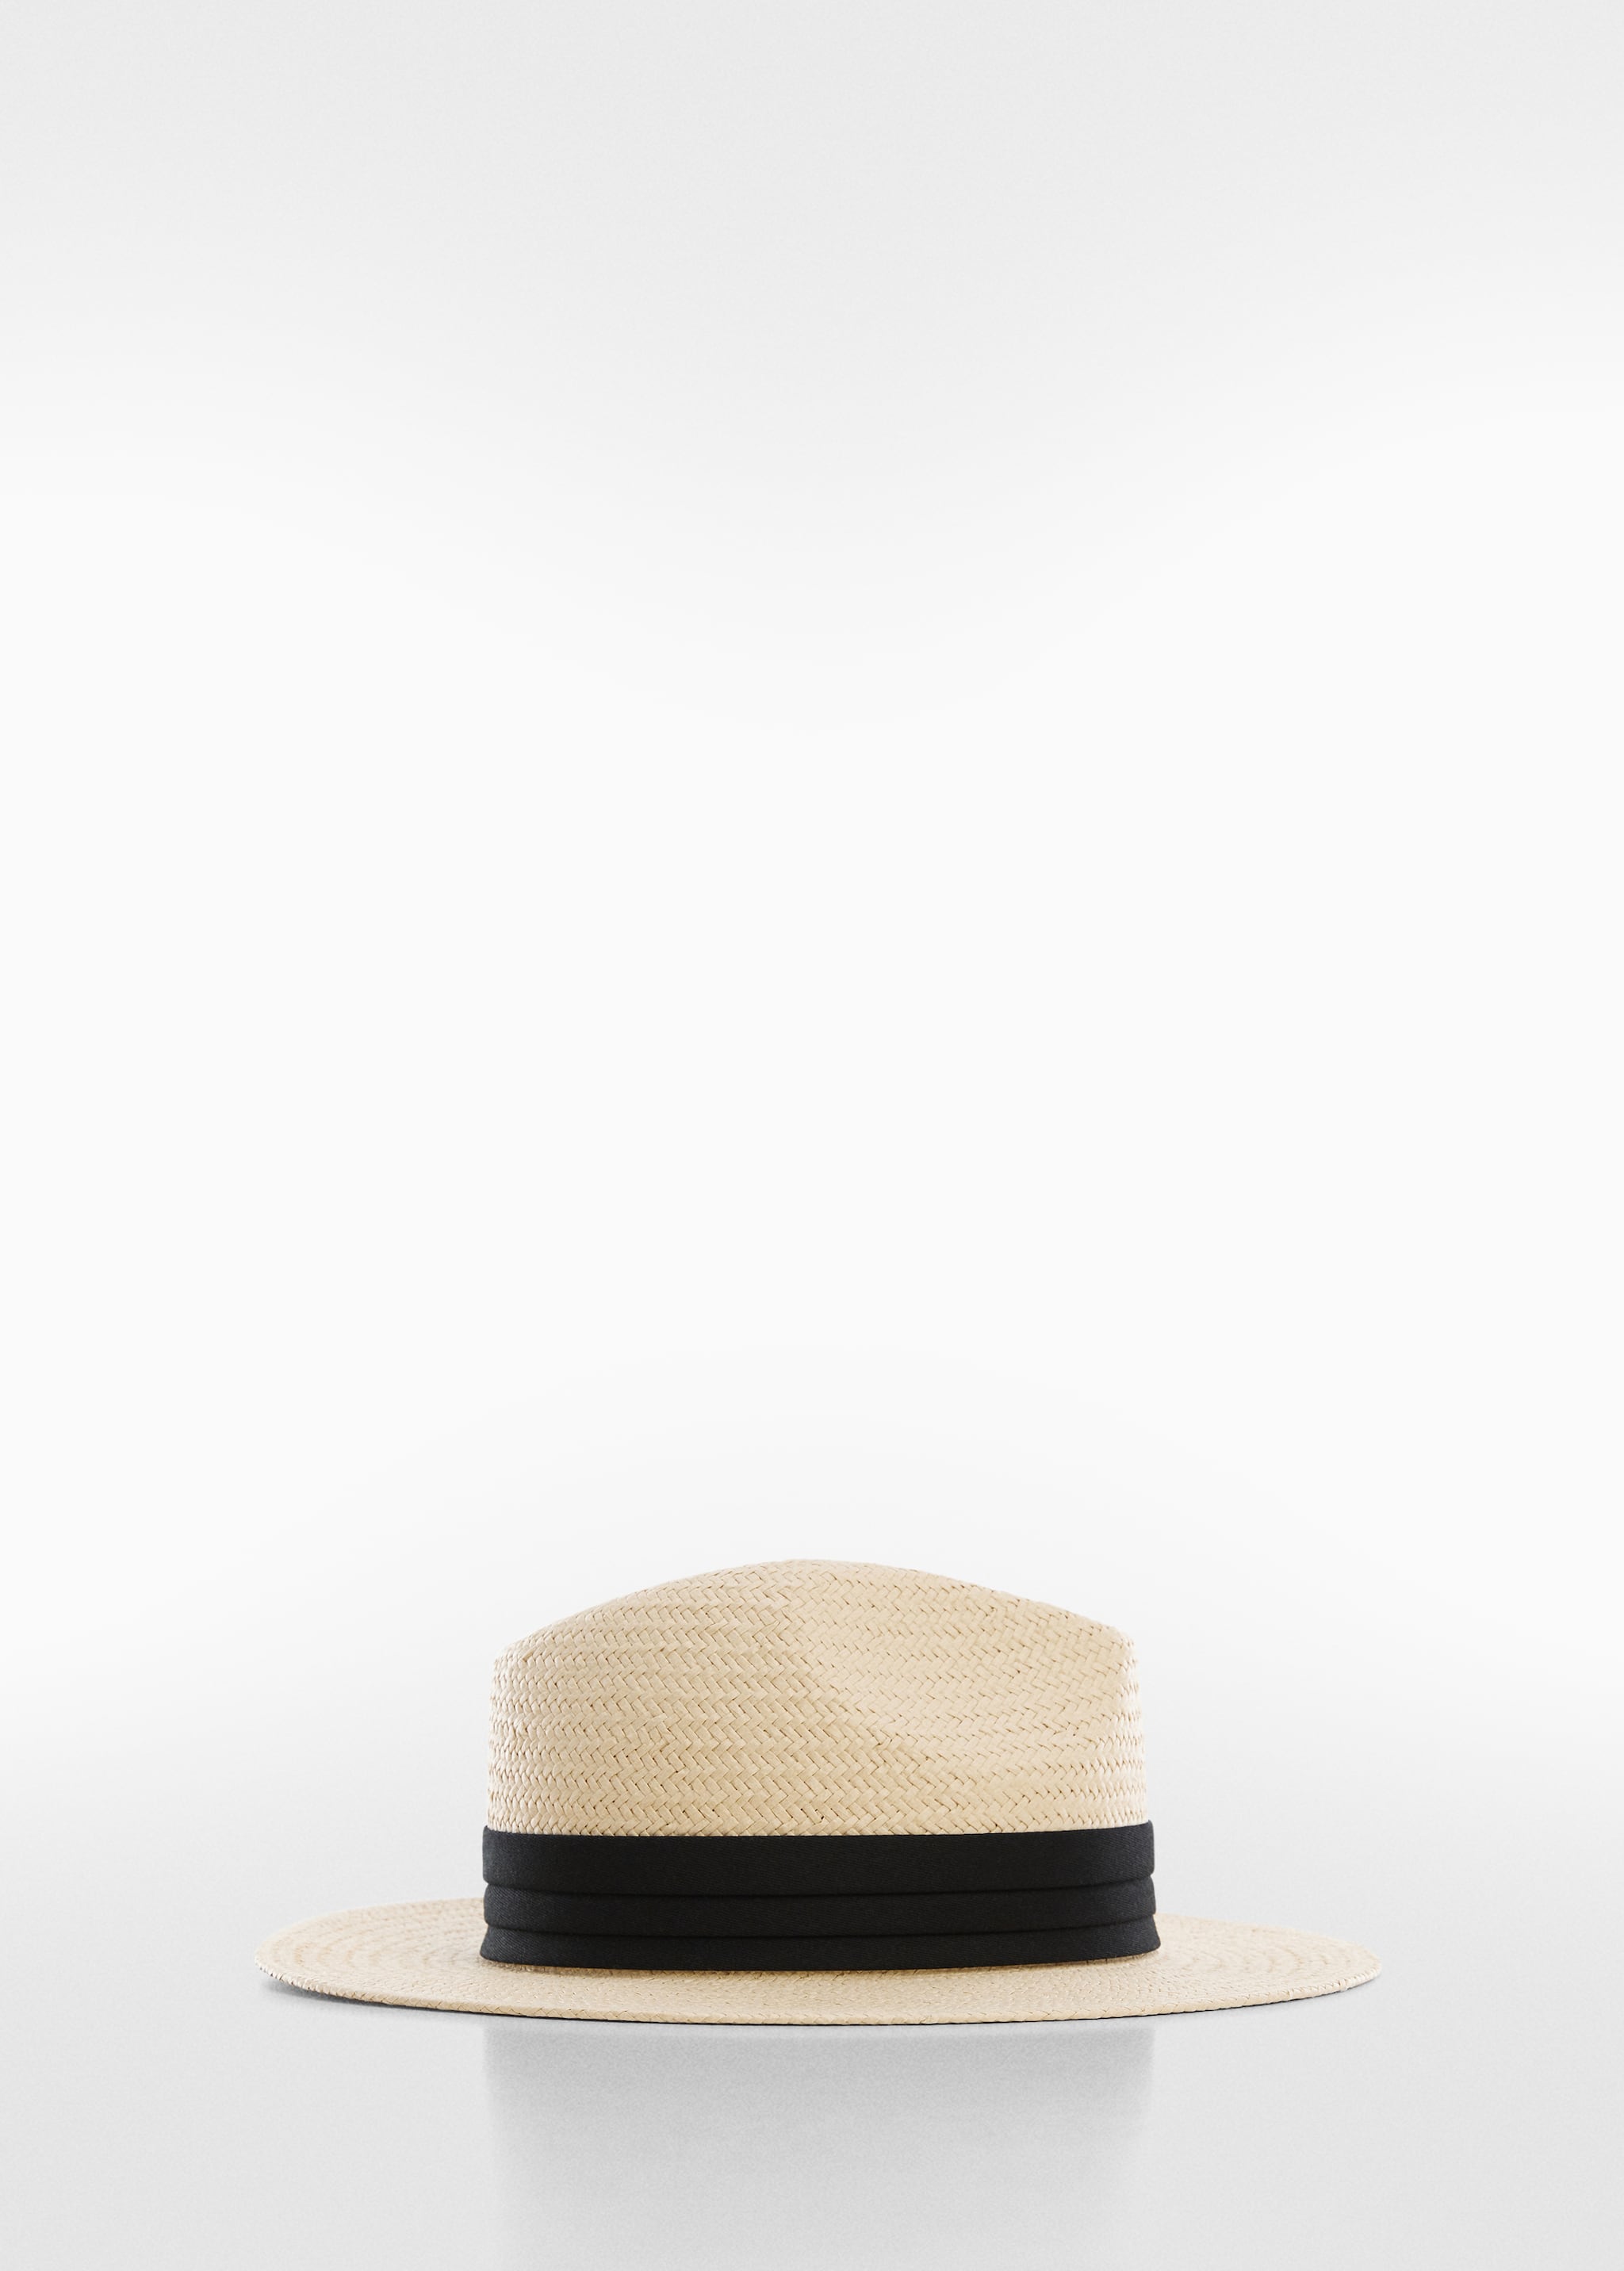 Natural fibre ribbon hat  - Изделие без модели